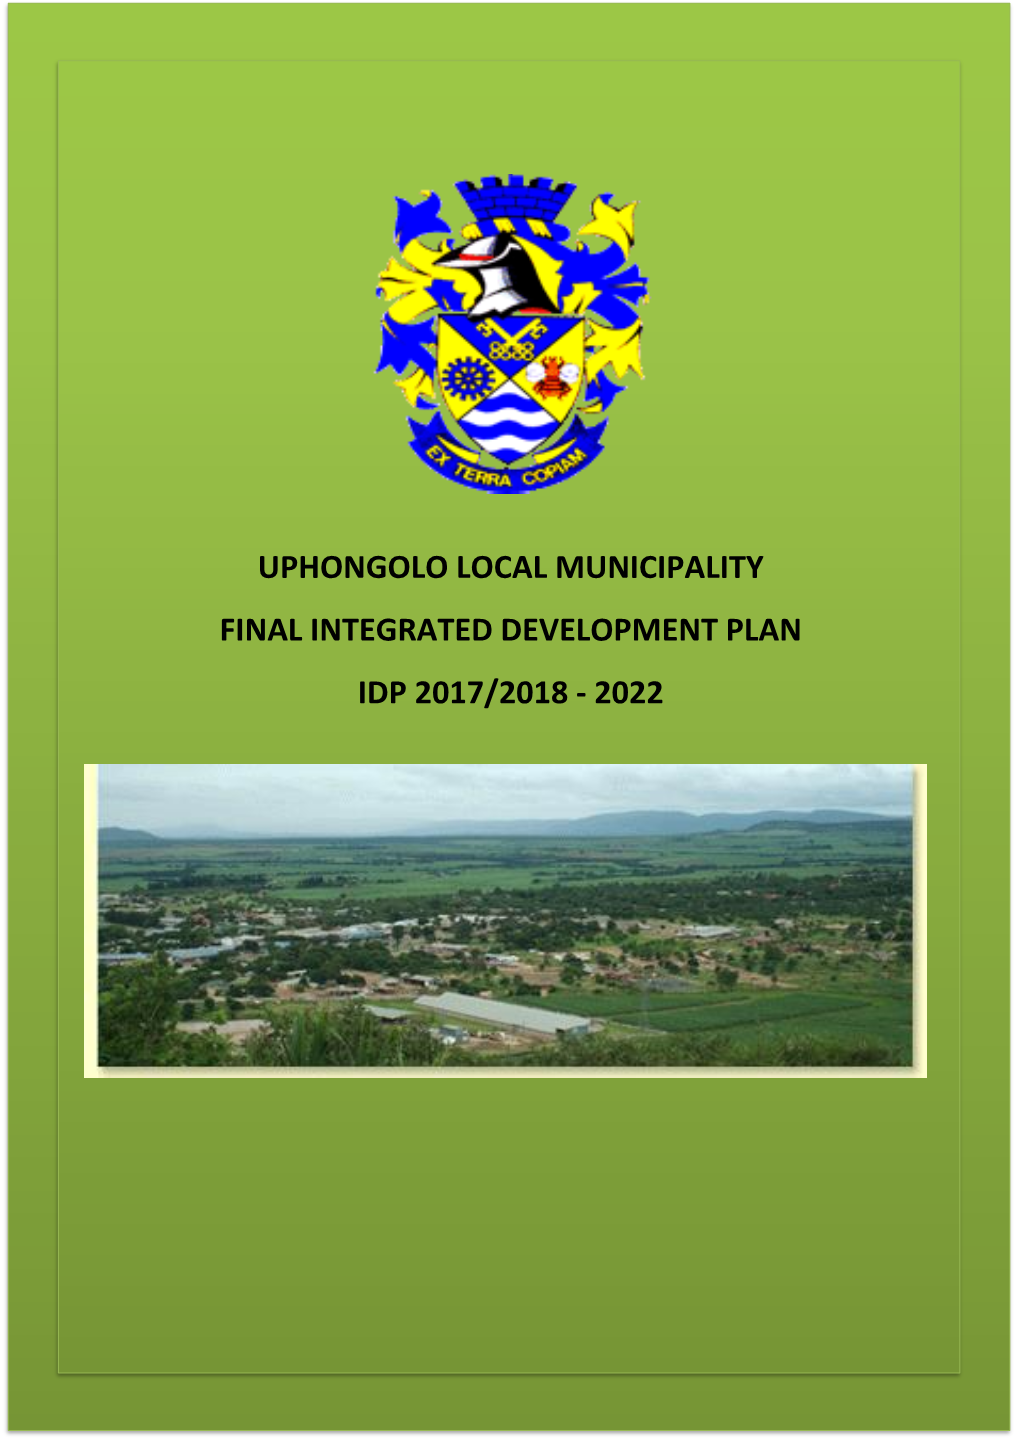 Uphongolo Local Municipality Final Integrated Development Plan Idp 2017/2018 - 2022